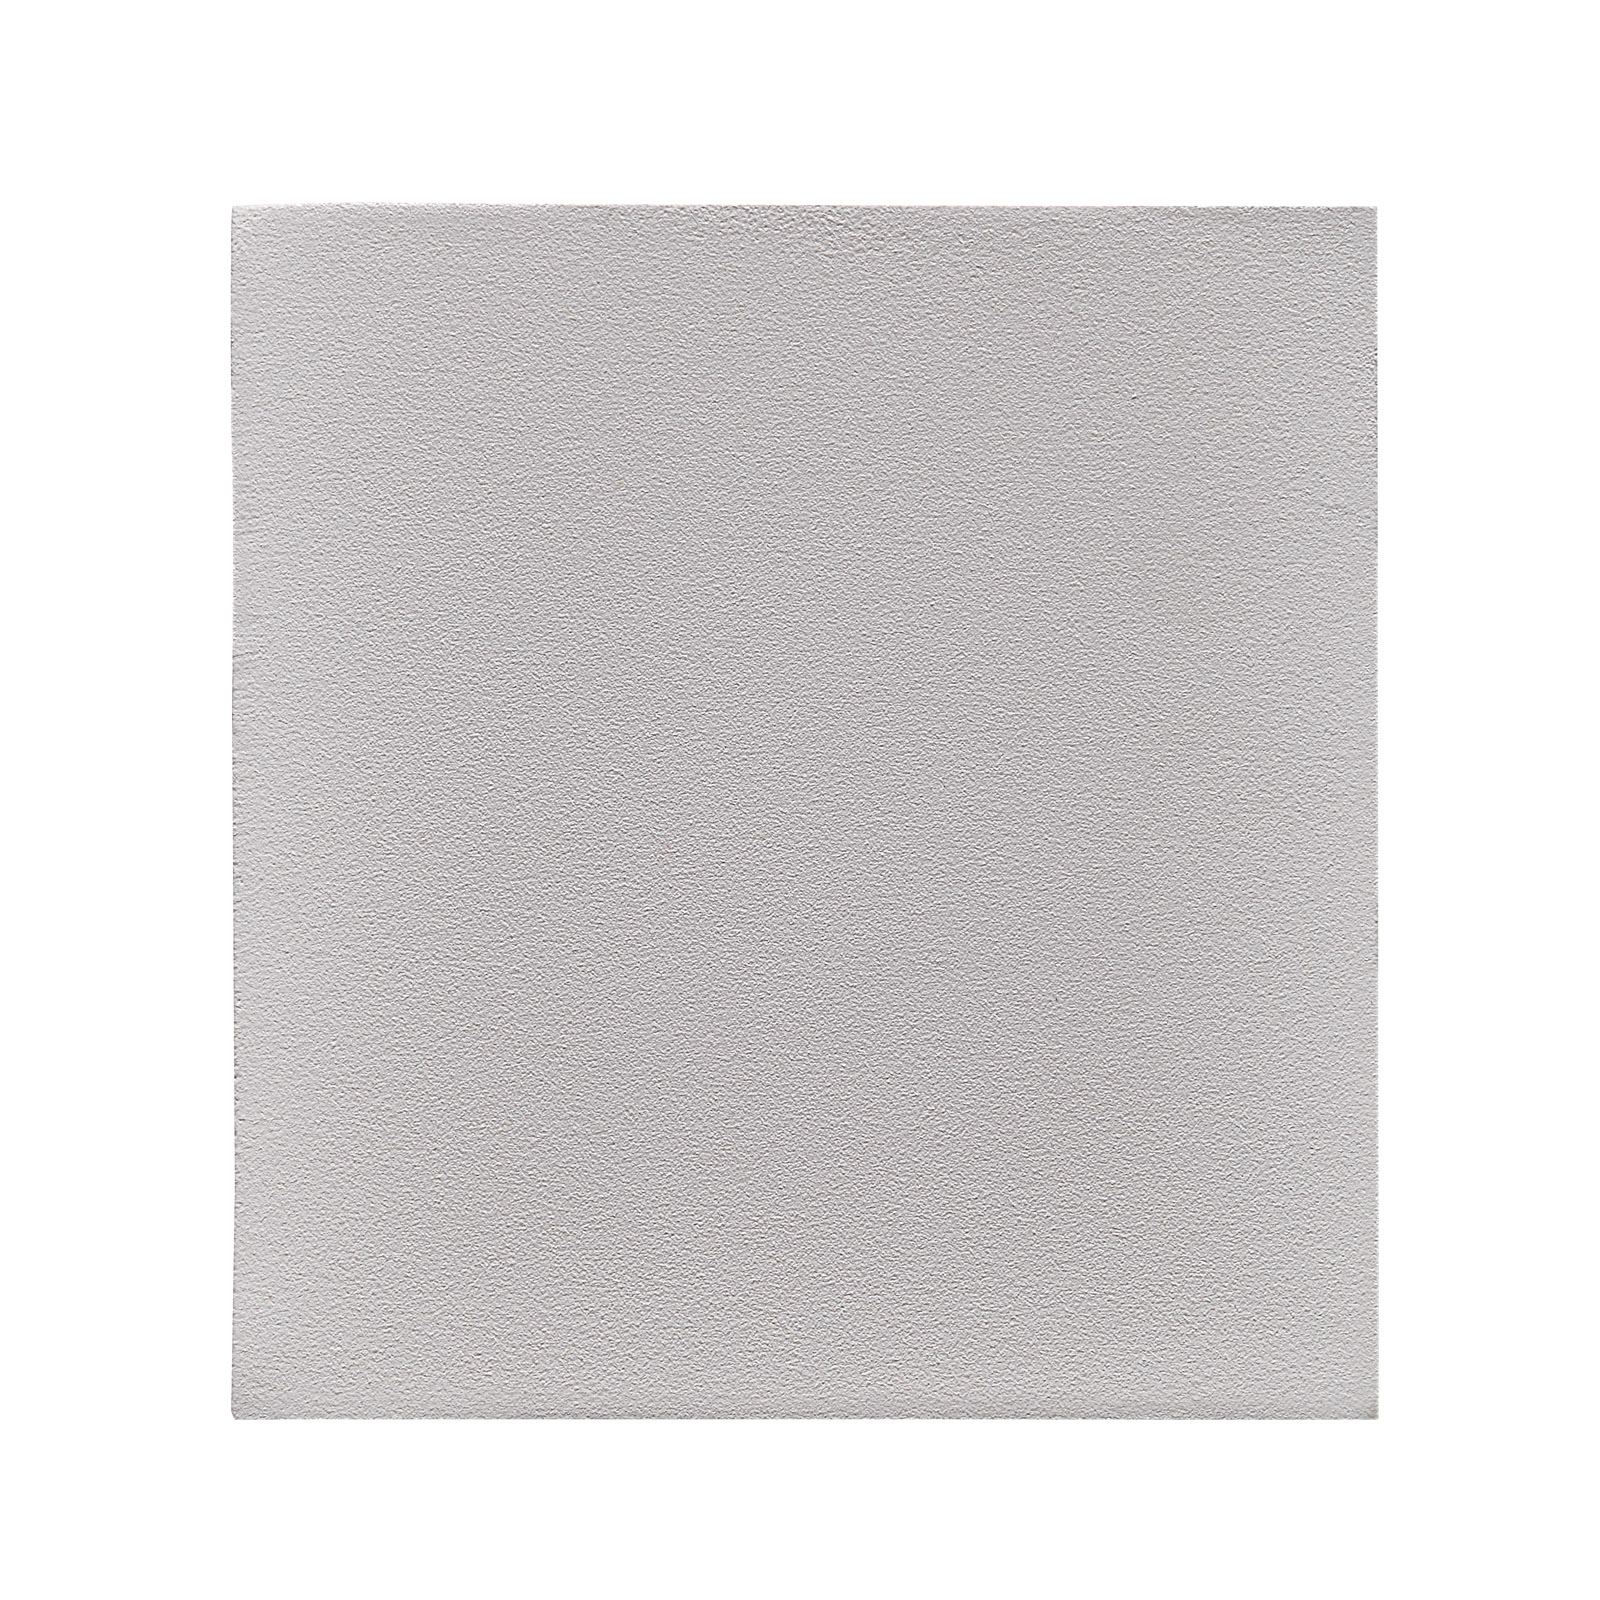 Kinkiet zewnętrzny LED Canto Kubi 2, 10 cm, biały